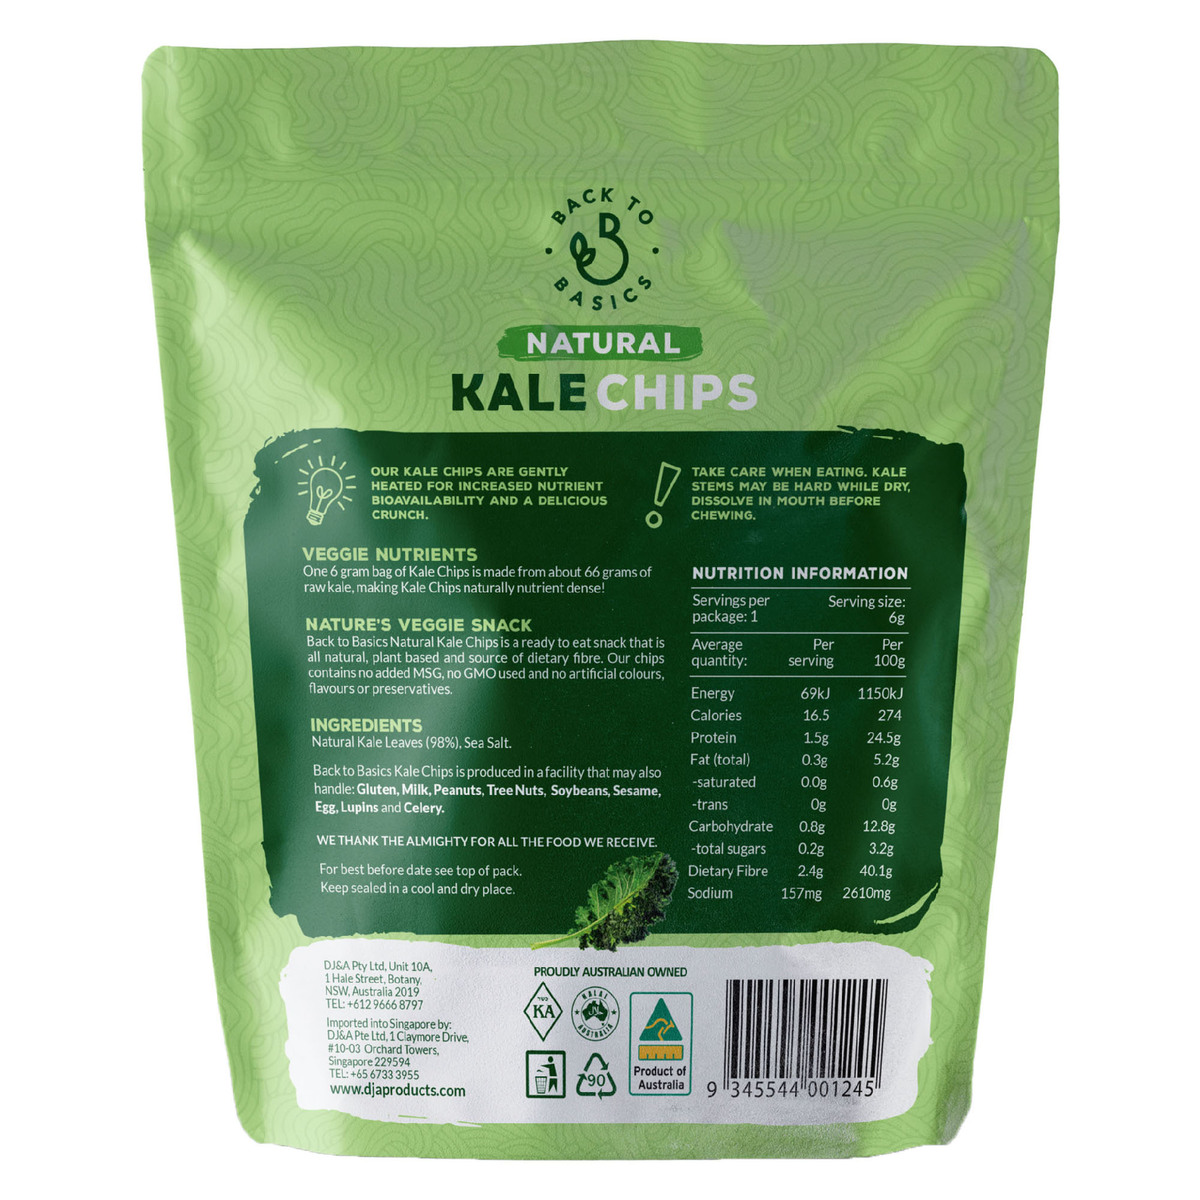 Back to Basics Plant Based Natural Kale Chips 6 g